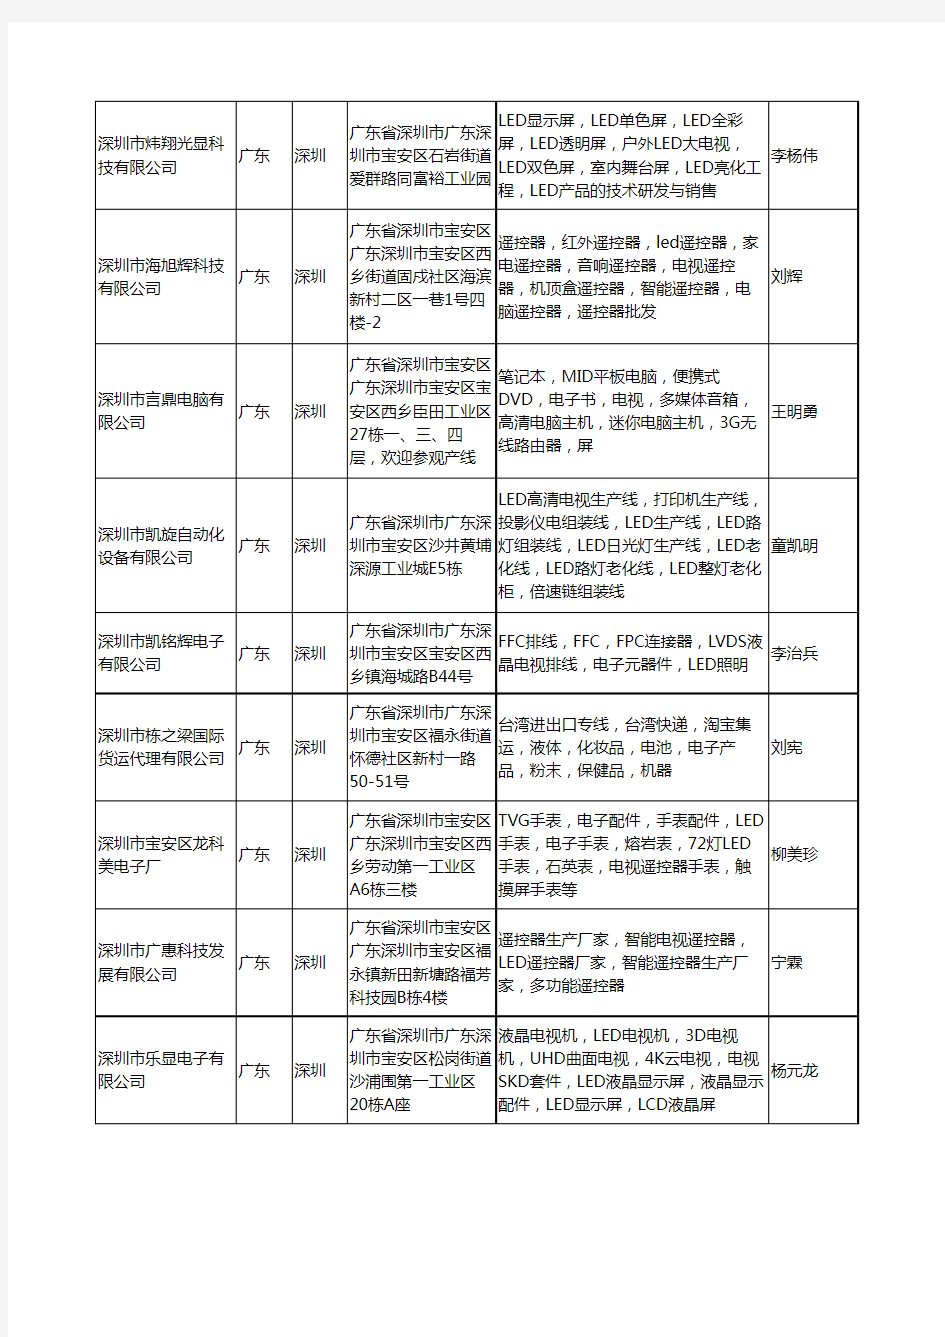 2020新版广东省深圳LED电视工商企业公司名录名单黄页大全389家